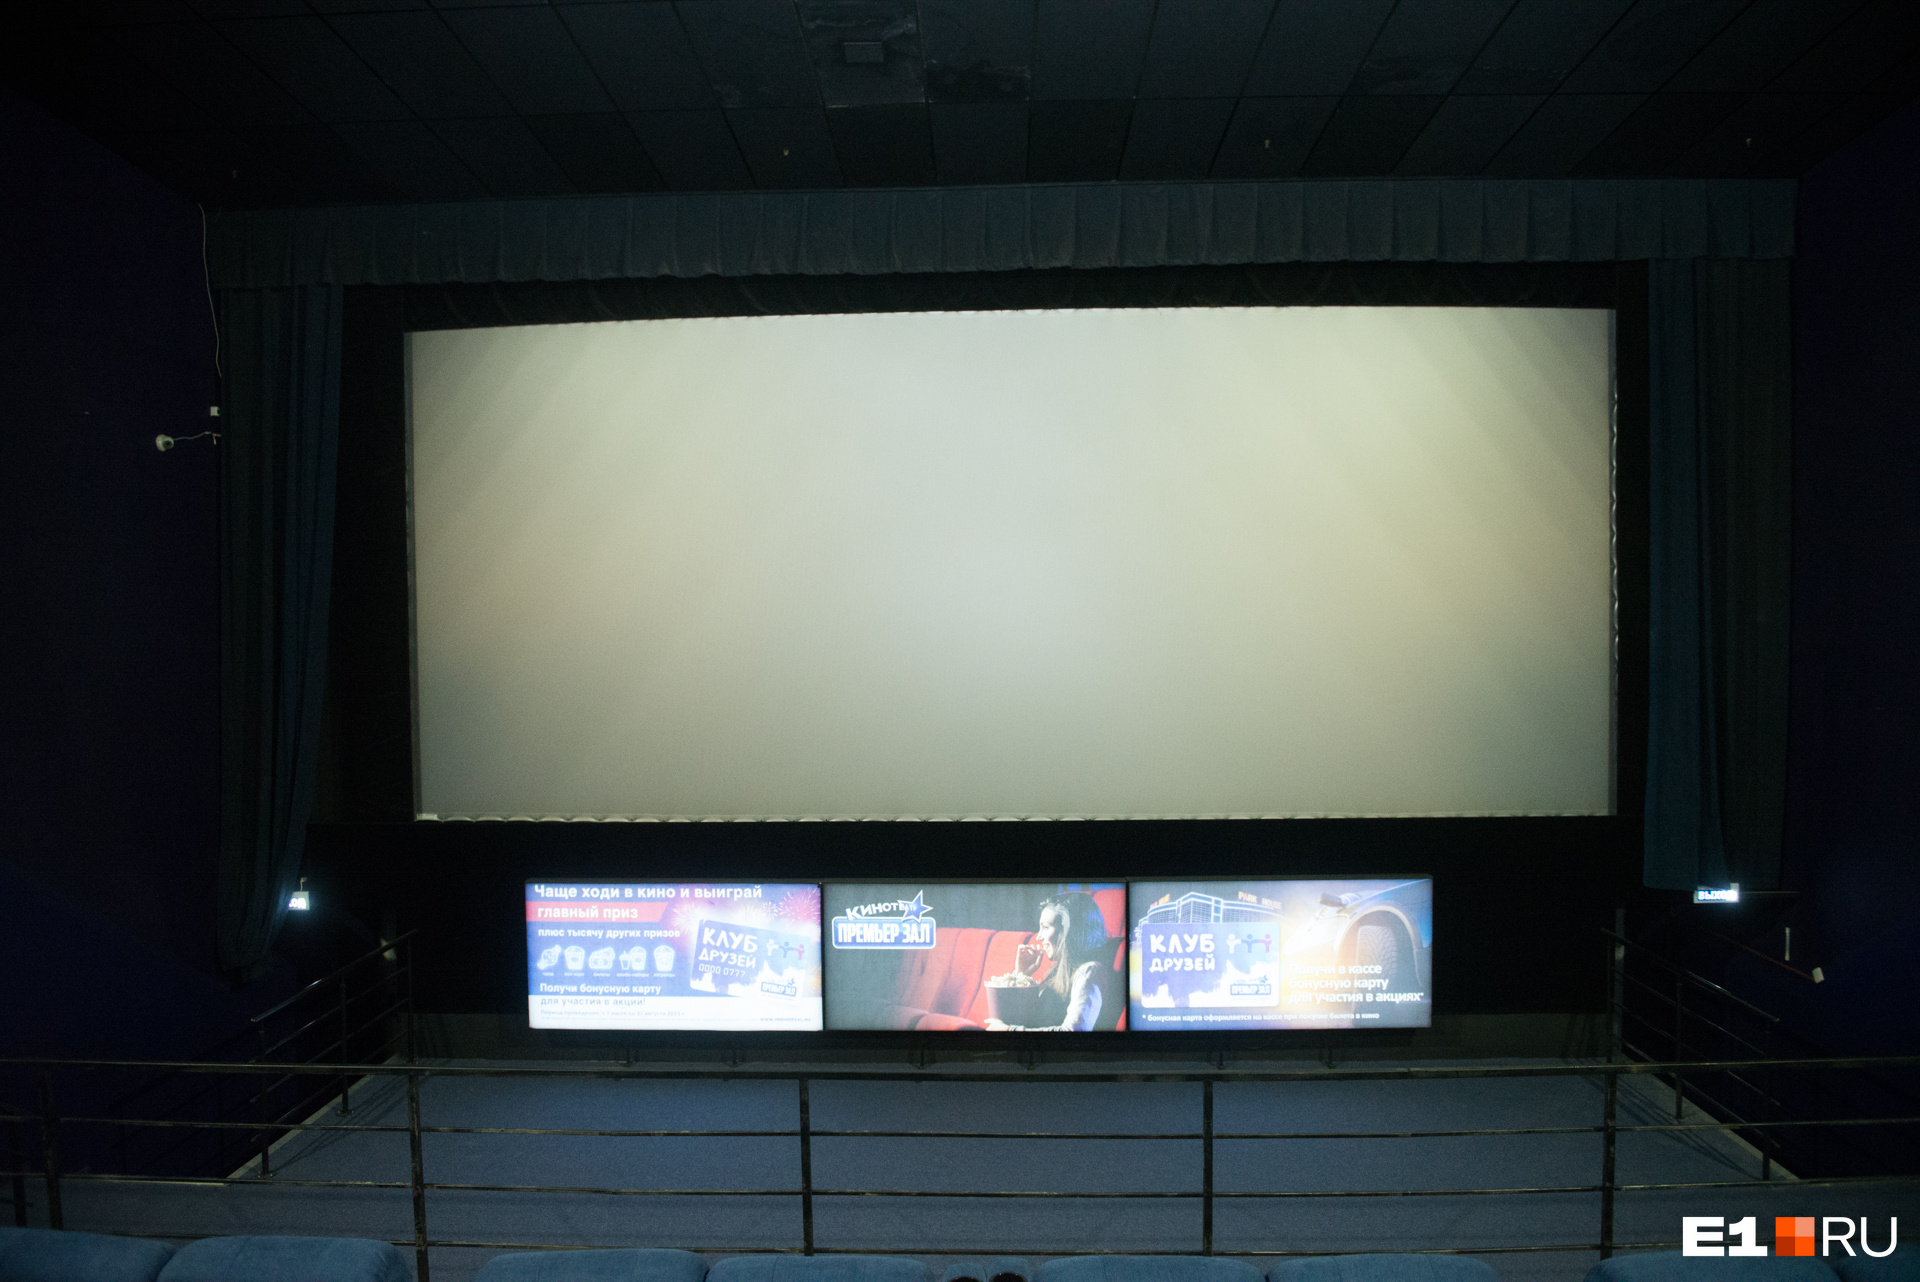 Через 5–7 лет проекторы исчезнут из кинотеатров. Их заменят жидкокристаллические экраны 